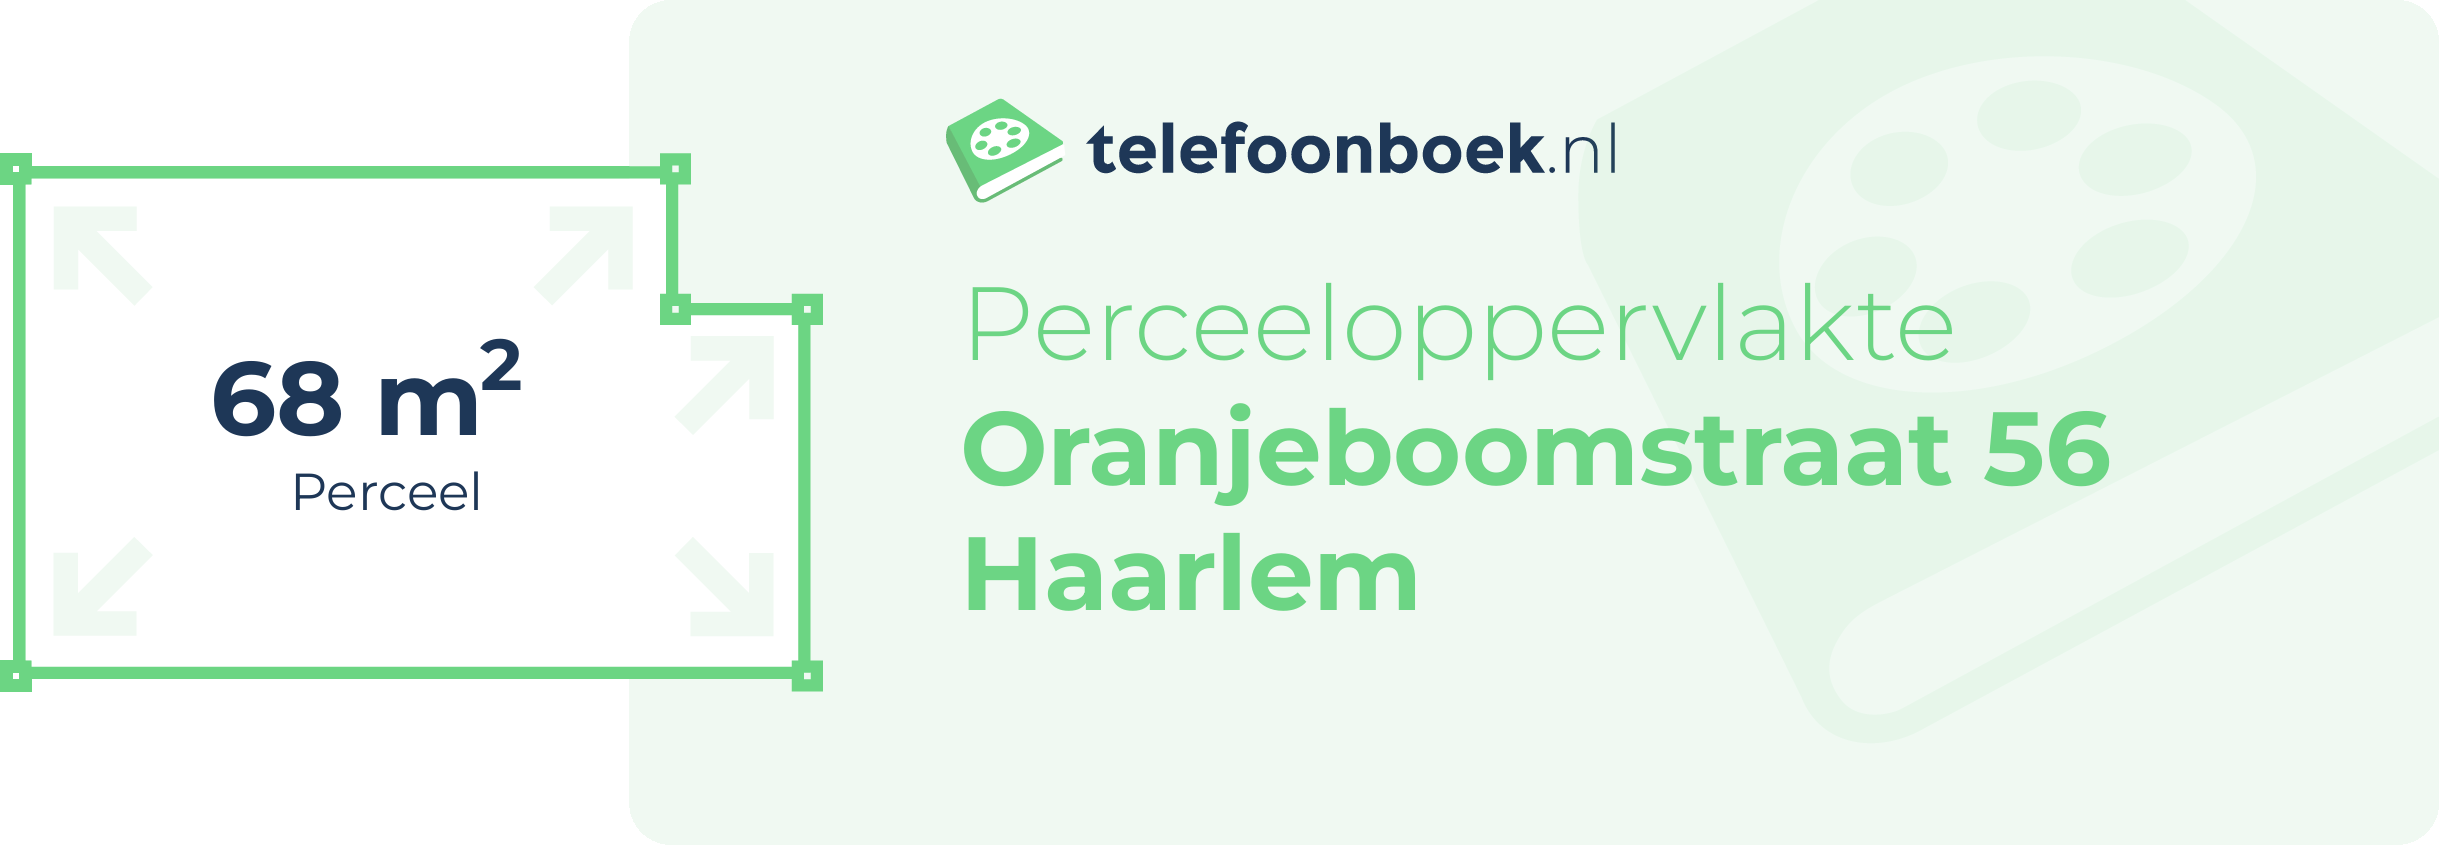 Perceeloppervlakte Oranjeboomstraat 56 Haarlem